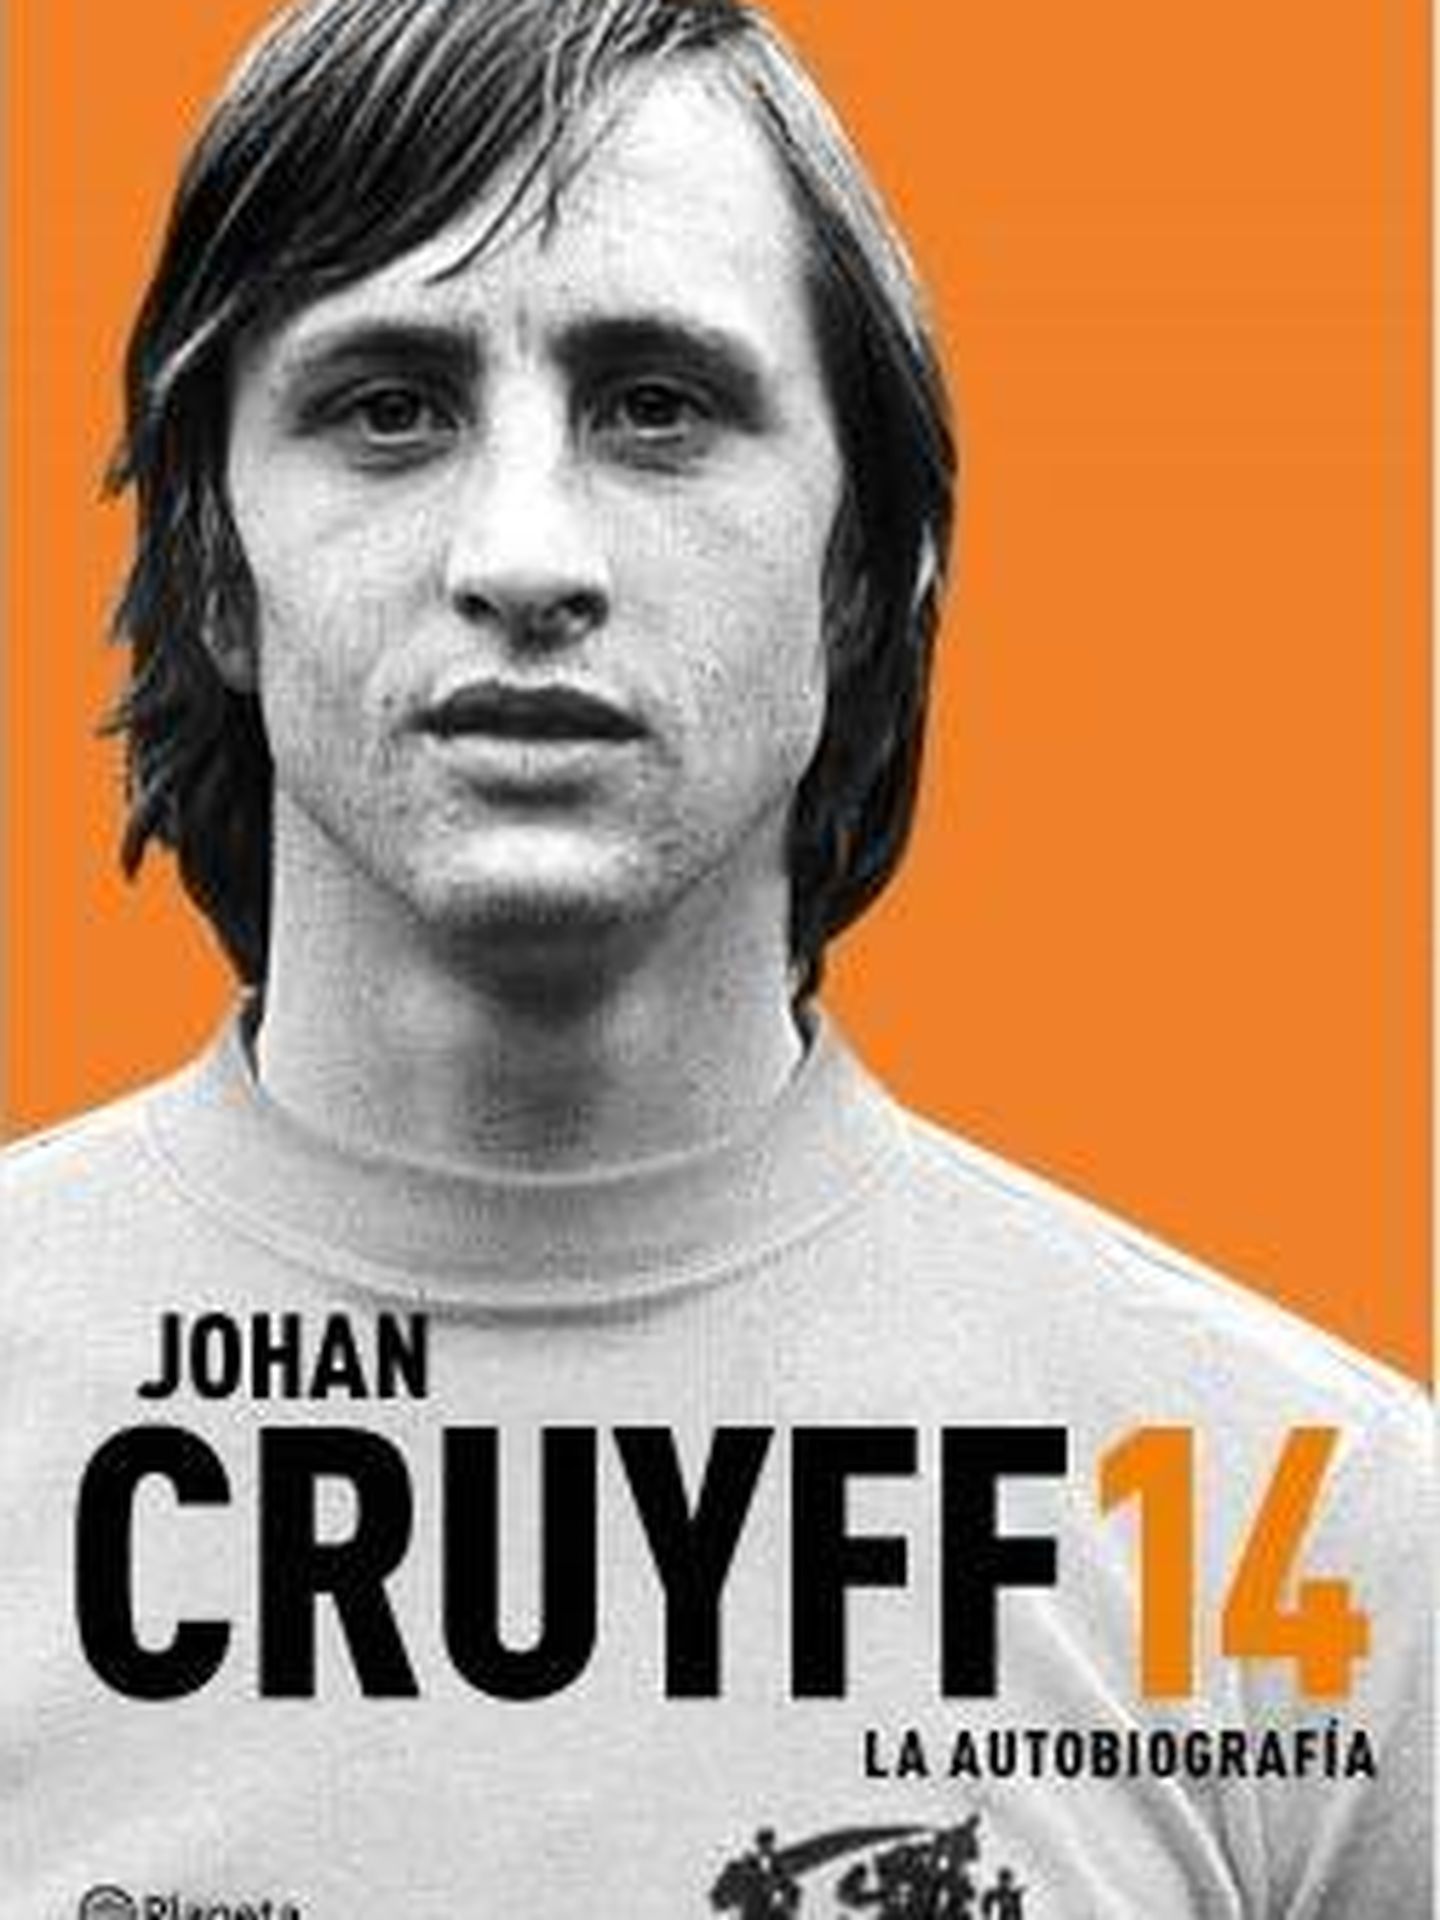 Portada del libro de Johan Cruyff.